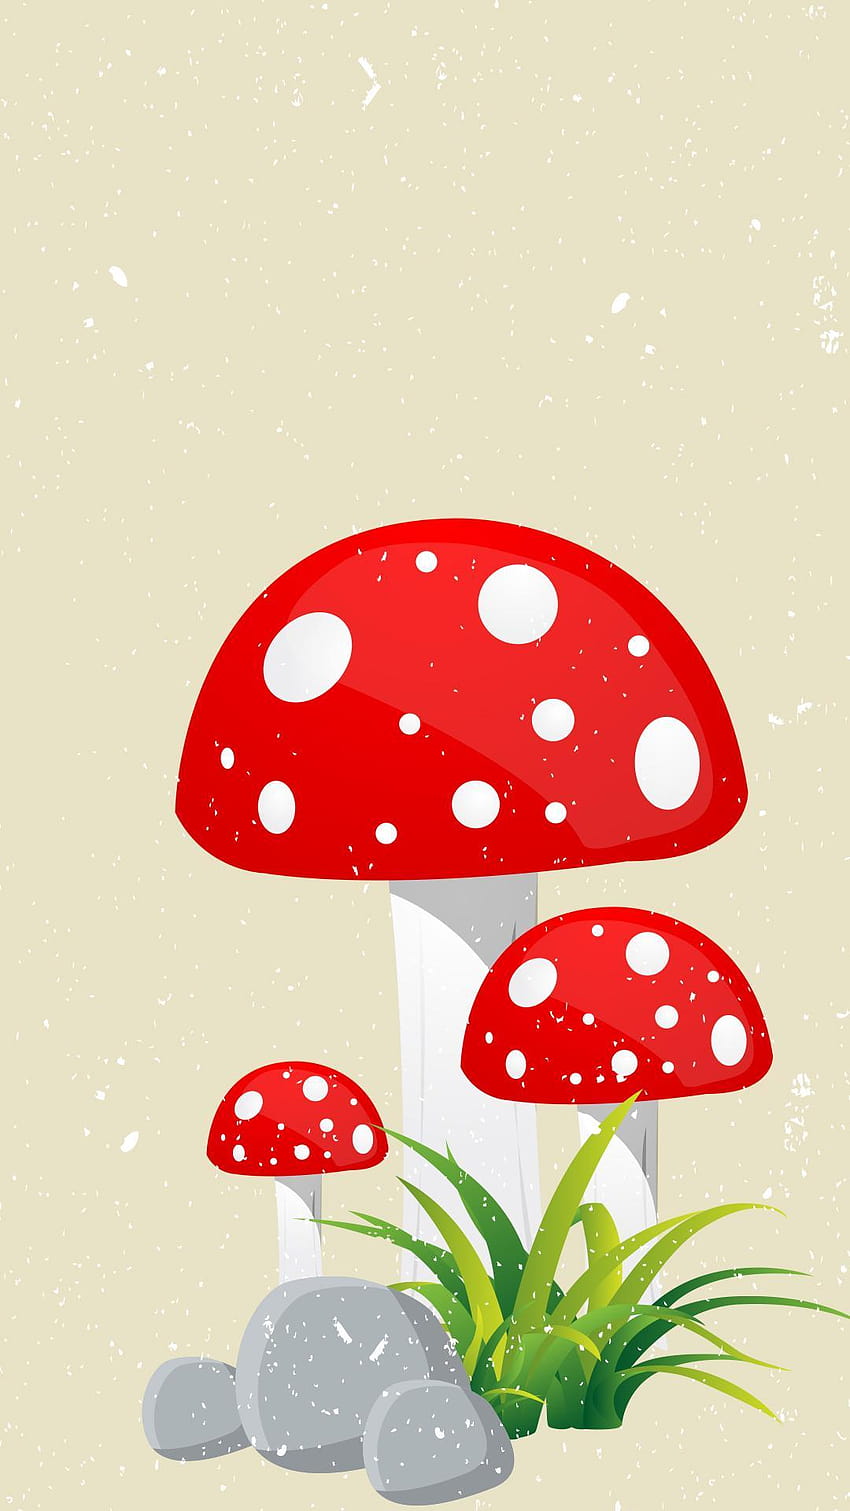 Illustration of a mushroom - Mushroom